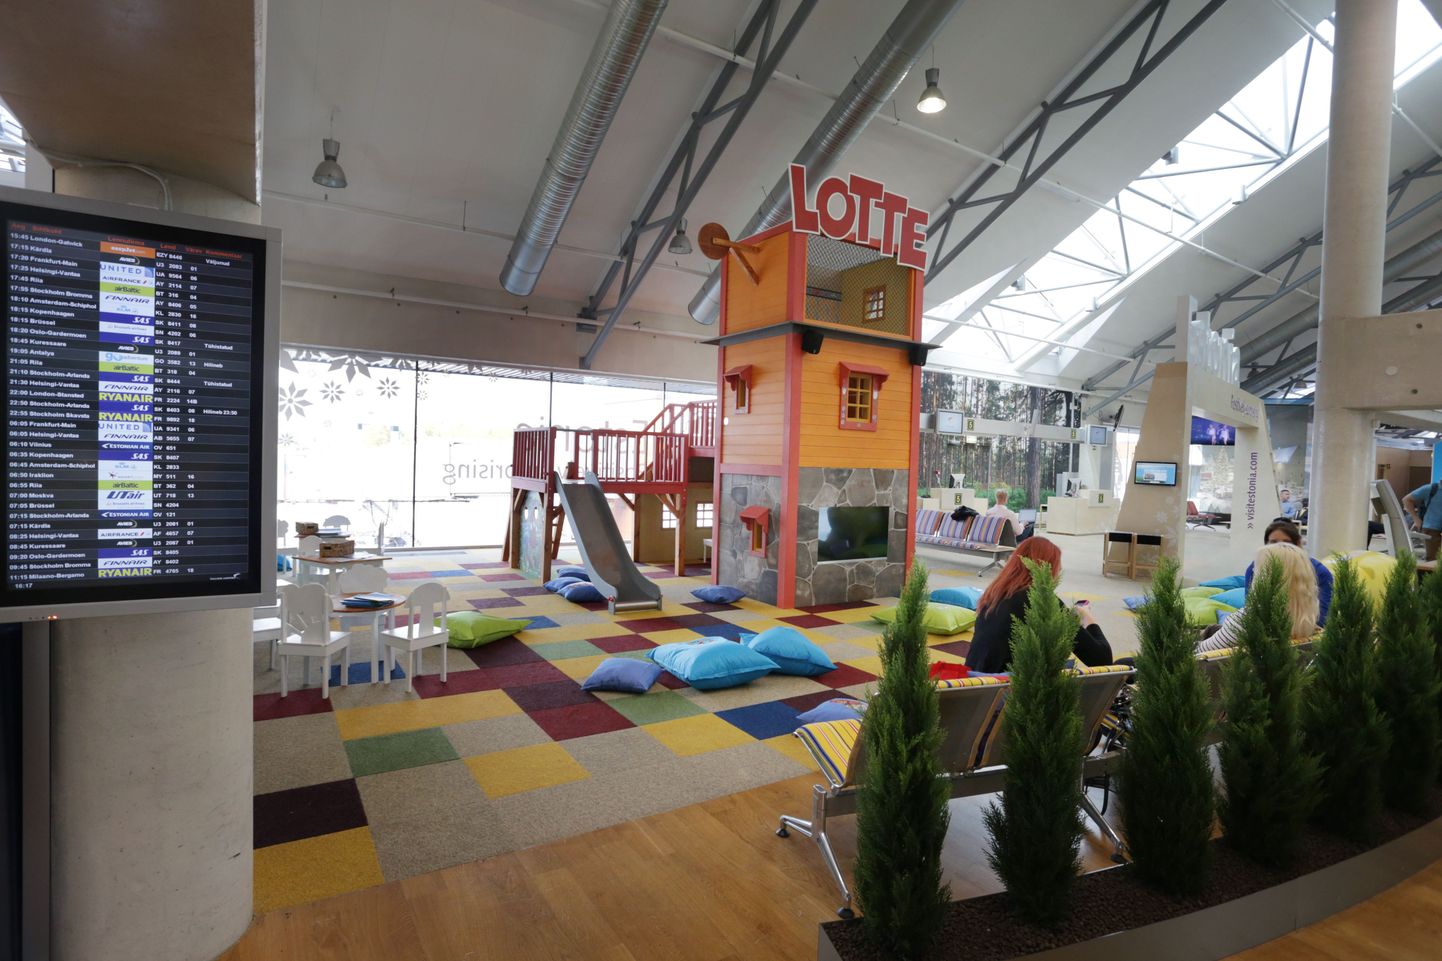 Tallinna Lennujaamas on avatud Lotte mängumaa väljuvate lendude tsoonis.